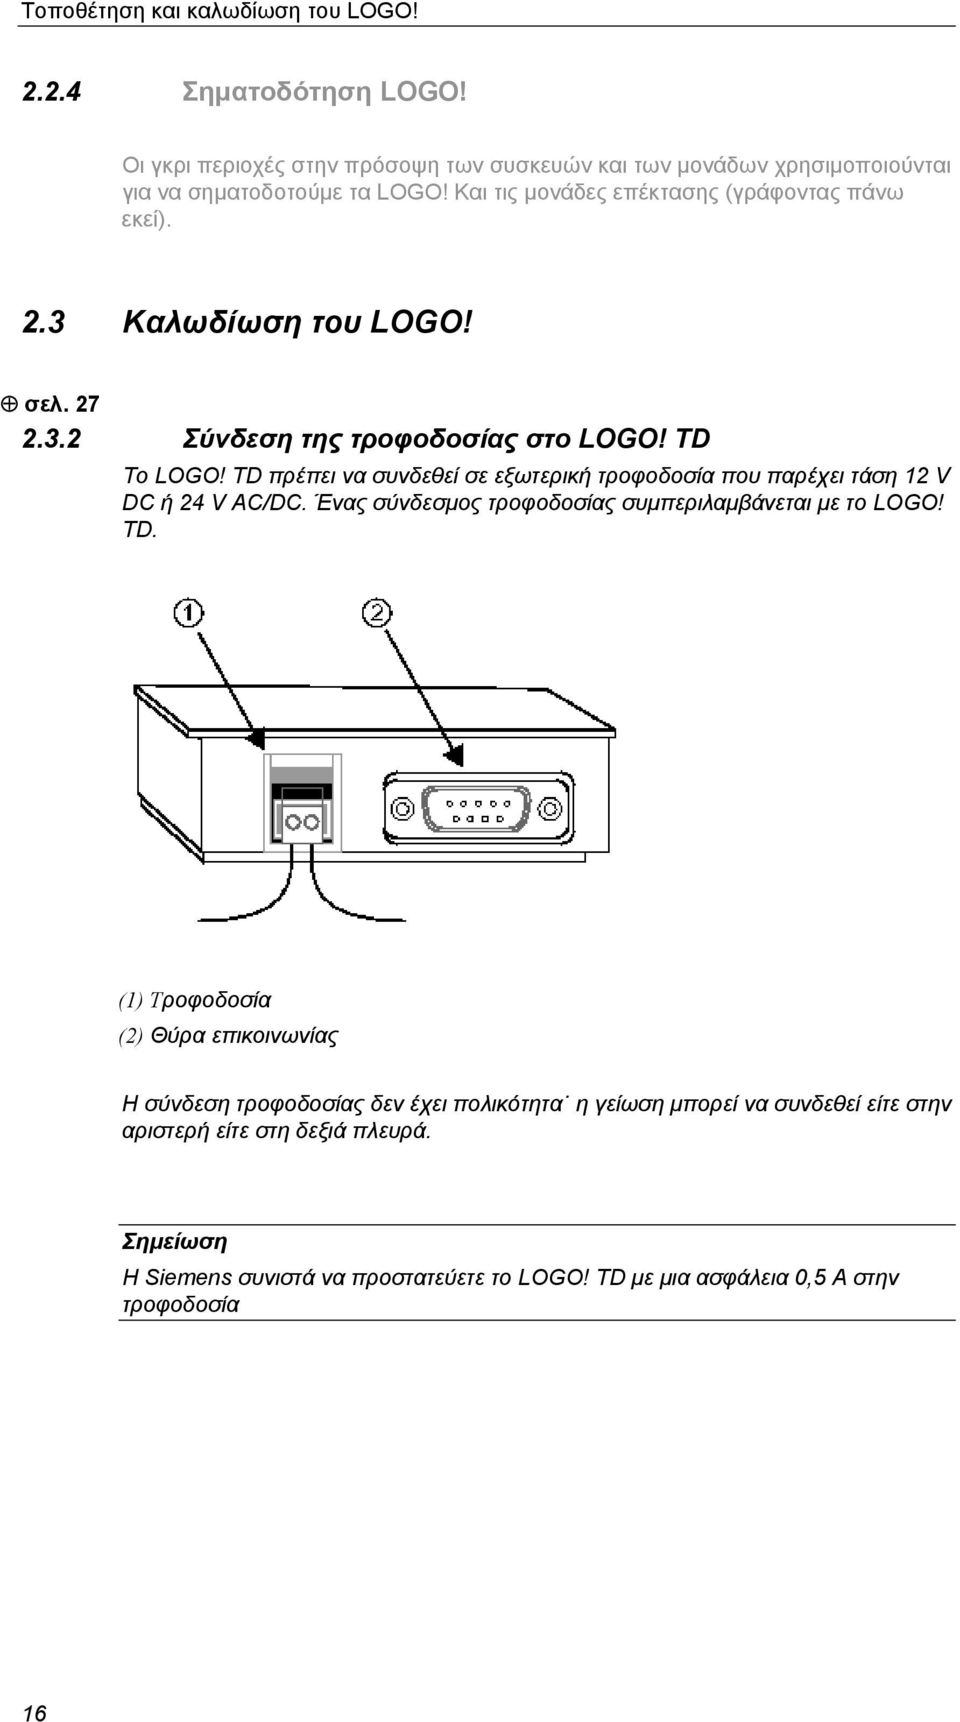 TD πρέπει να συνδεθεί σε εξωτερική τροφοδοσία που παρέχει τάση 12 V DC ή 24 V AC/DC. Ένας σύνδεσμος τροφοδοσίας συμπεριλαμβάνεται με το LOGO! TD.